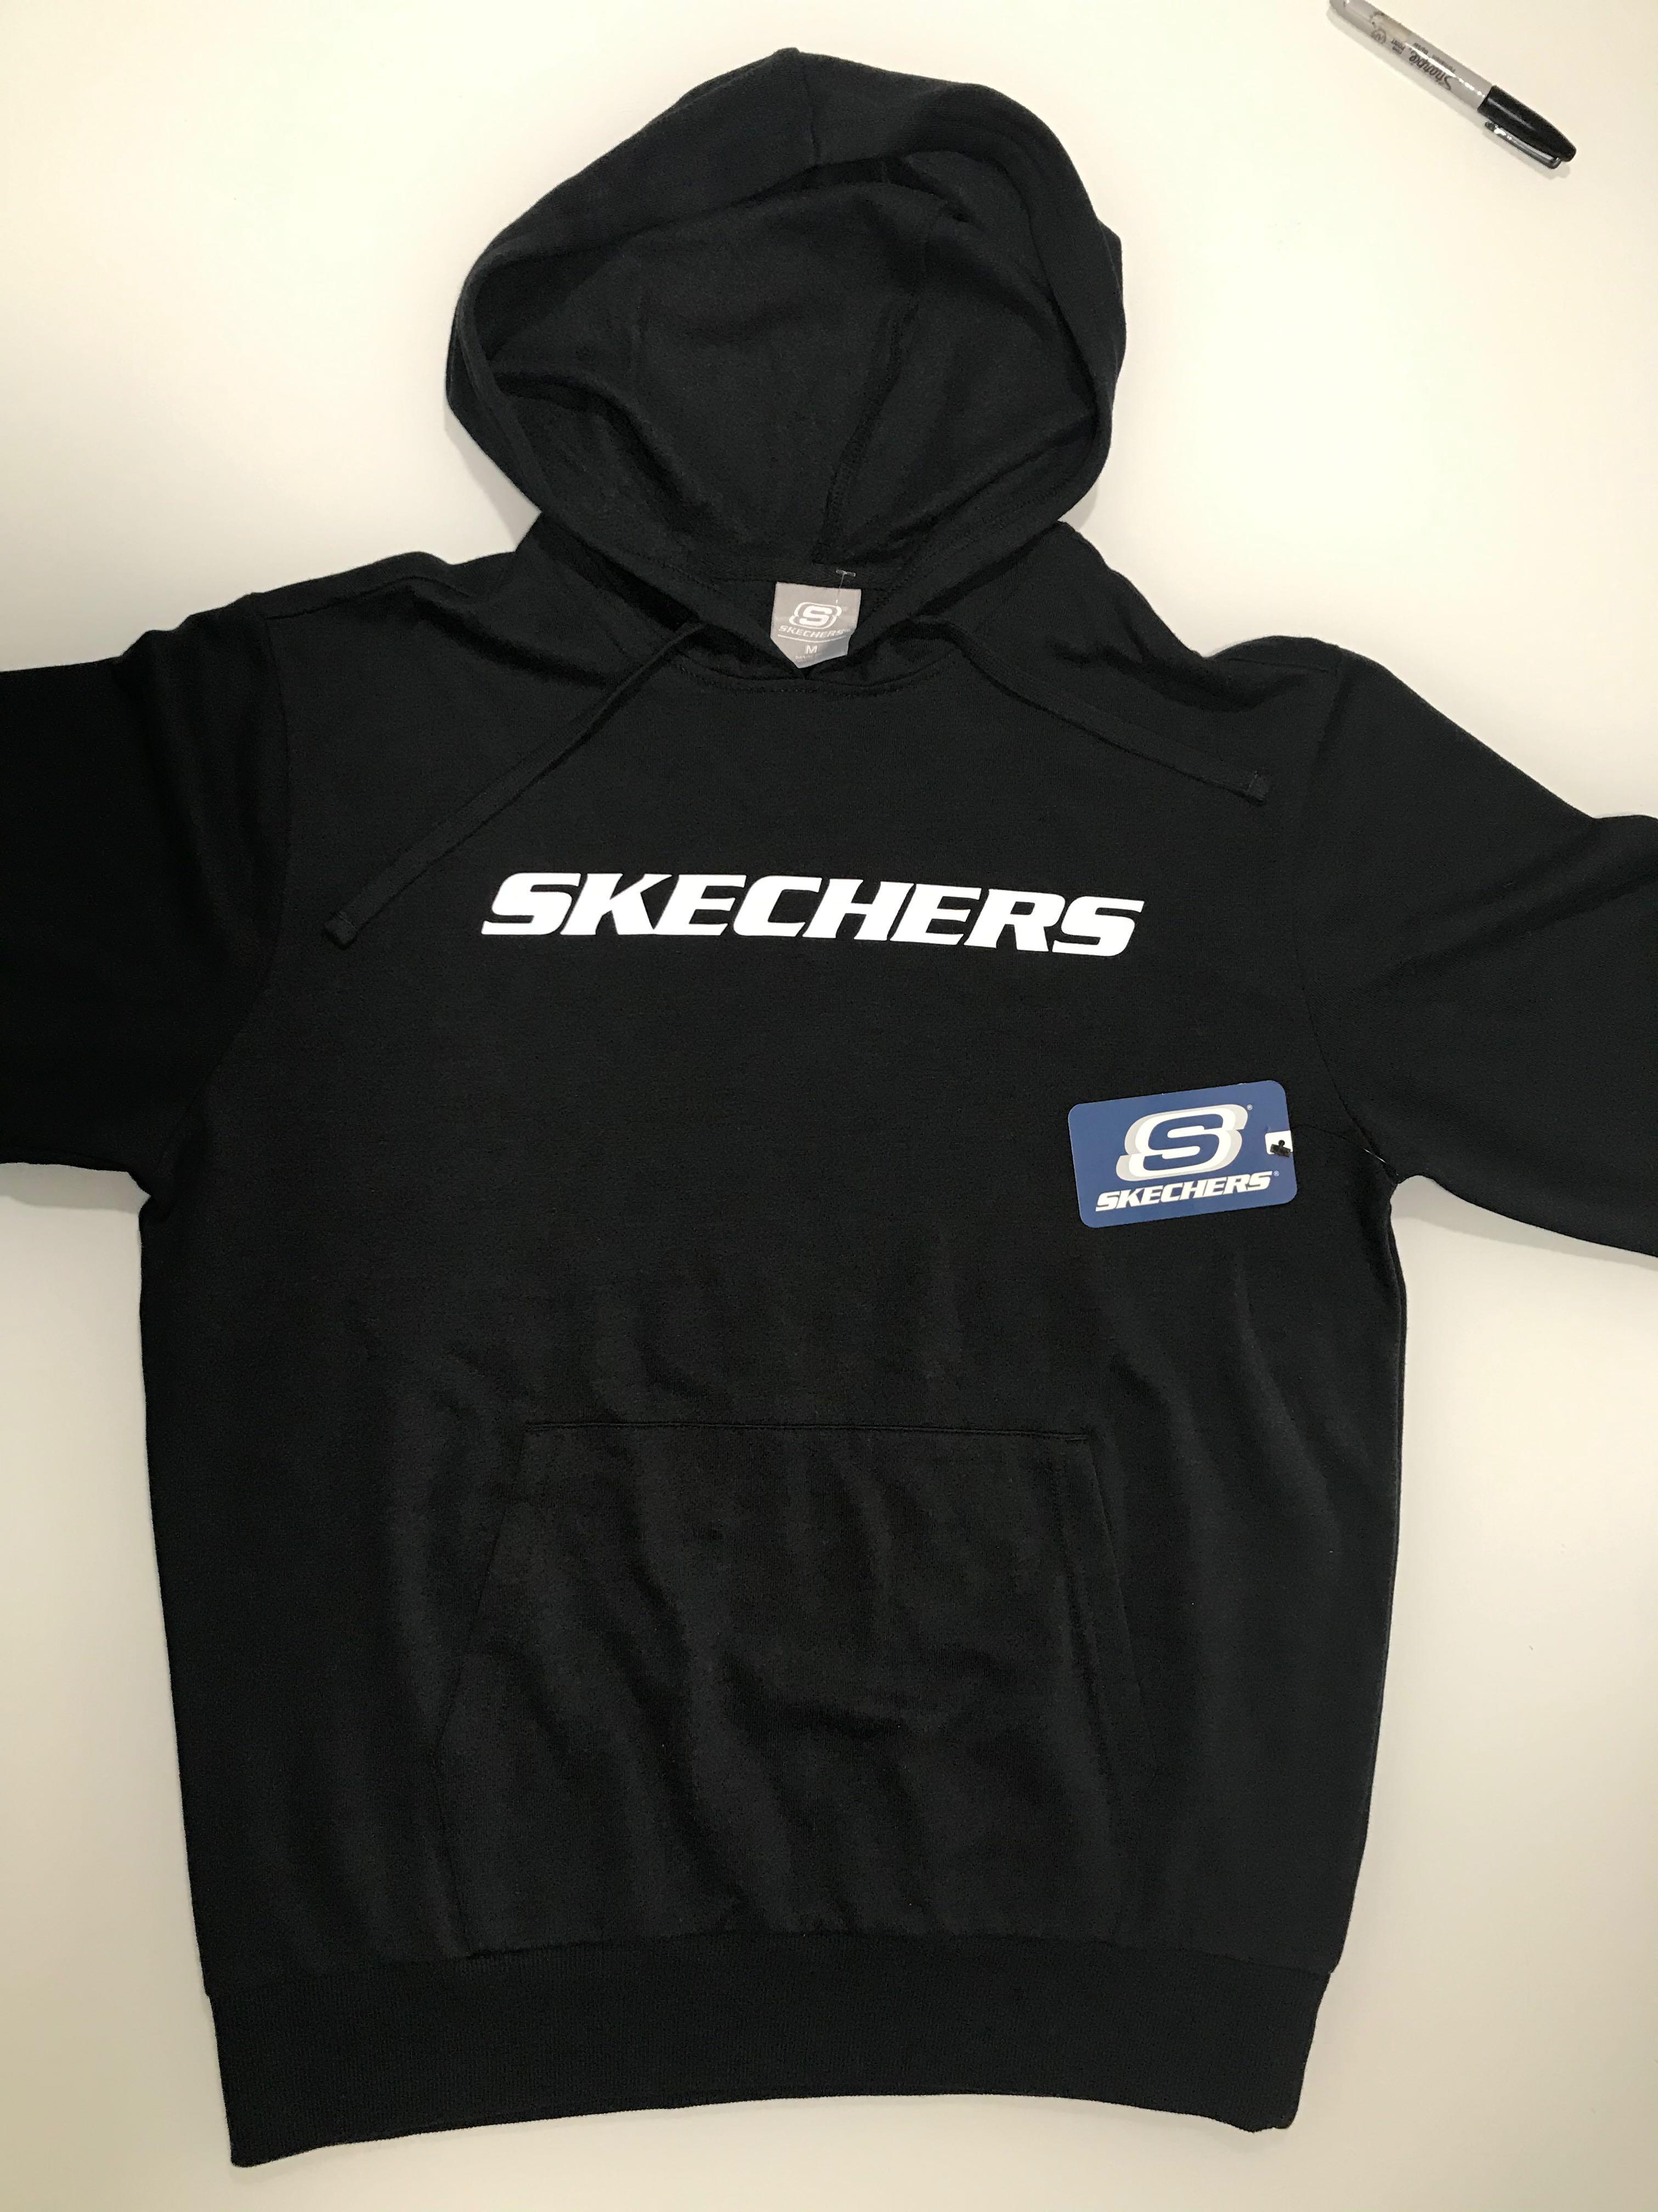 skechers black jackets